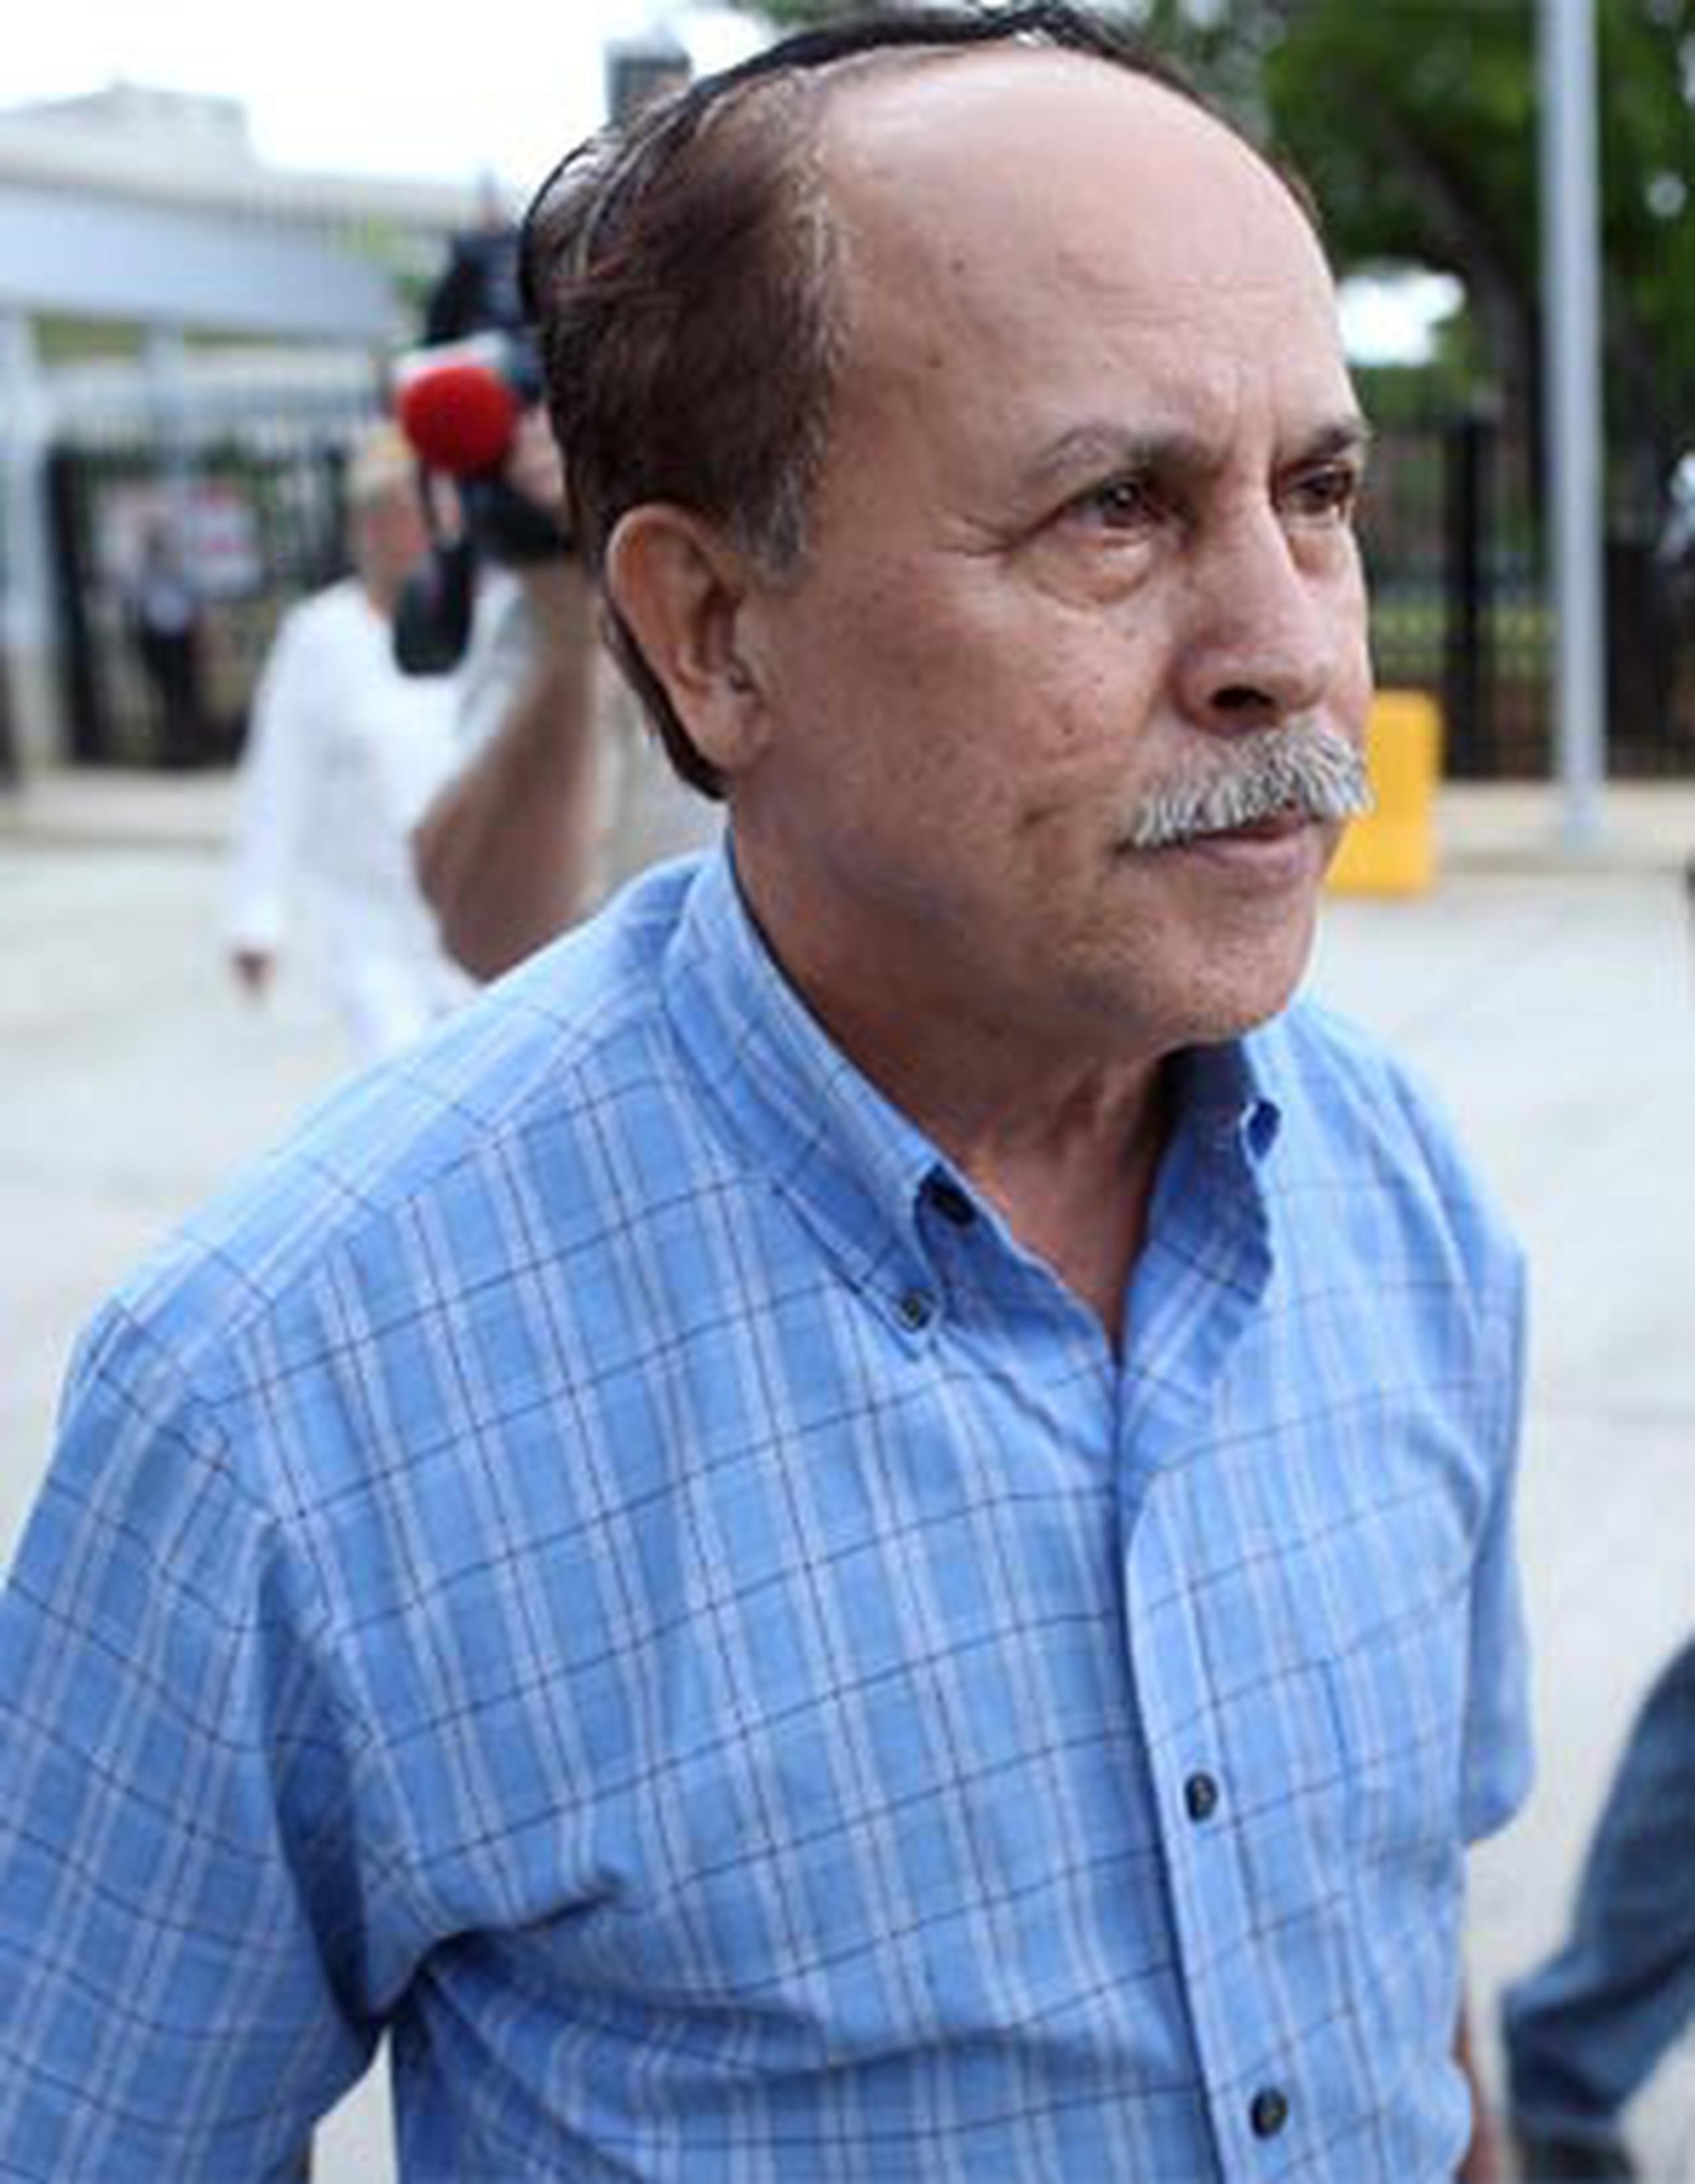 El juez Manuel Acevedo Hernández, quien estuvo más de 30 años en la judicatura, fue implicado en un acuerdo con el contador público autorizado Lutgardo Acevedo López. (Archivo)